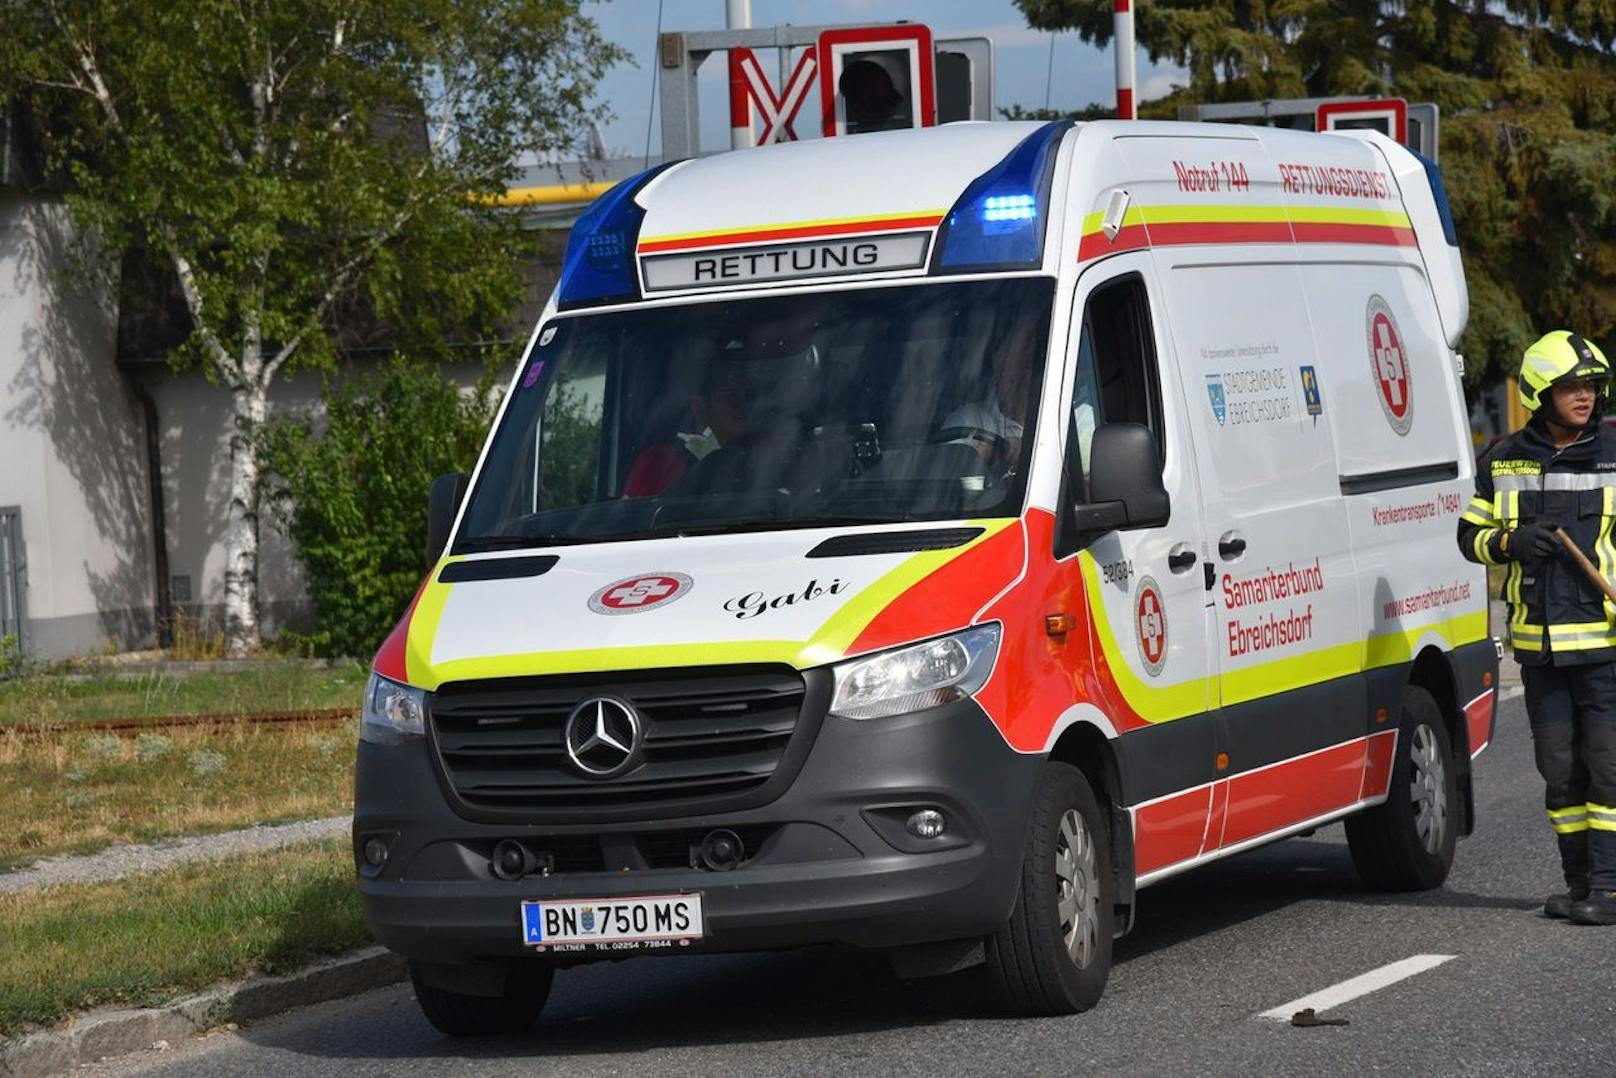 Rettungswagen des Arbeitersamariterbundes im Einsatz war in einen Verkehrsunfall verwickelt - 2 Sanis und Pkw-Lenker wurden verletzt.